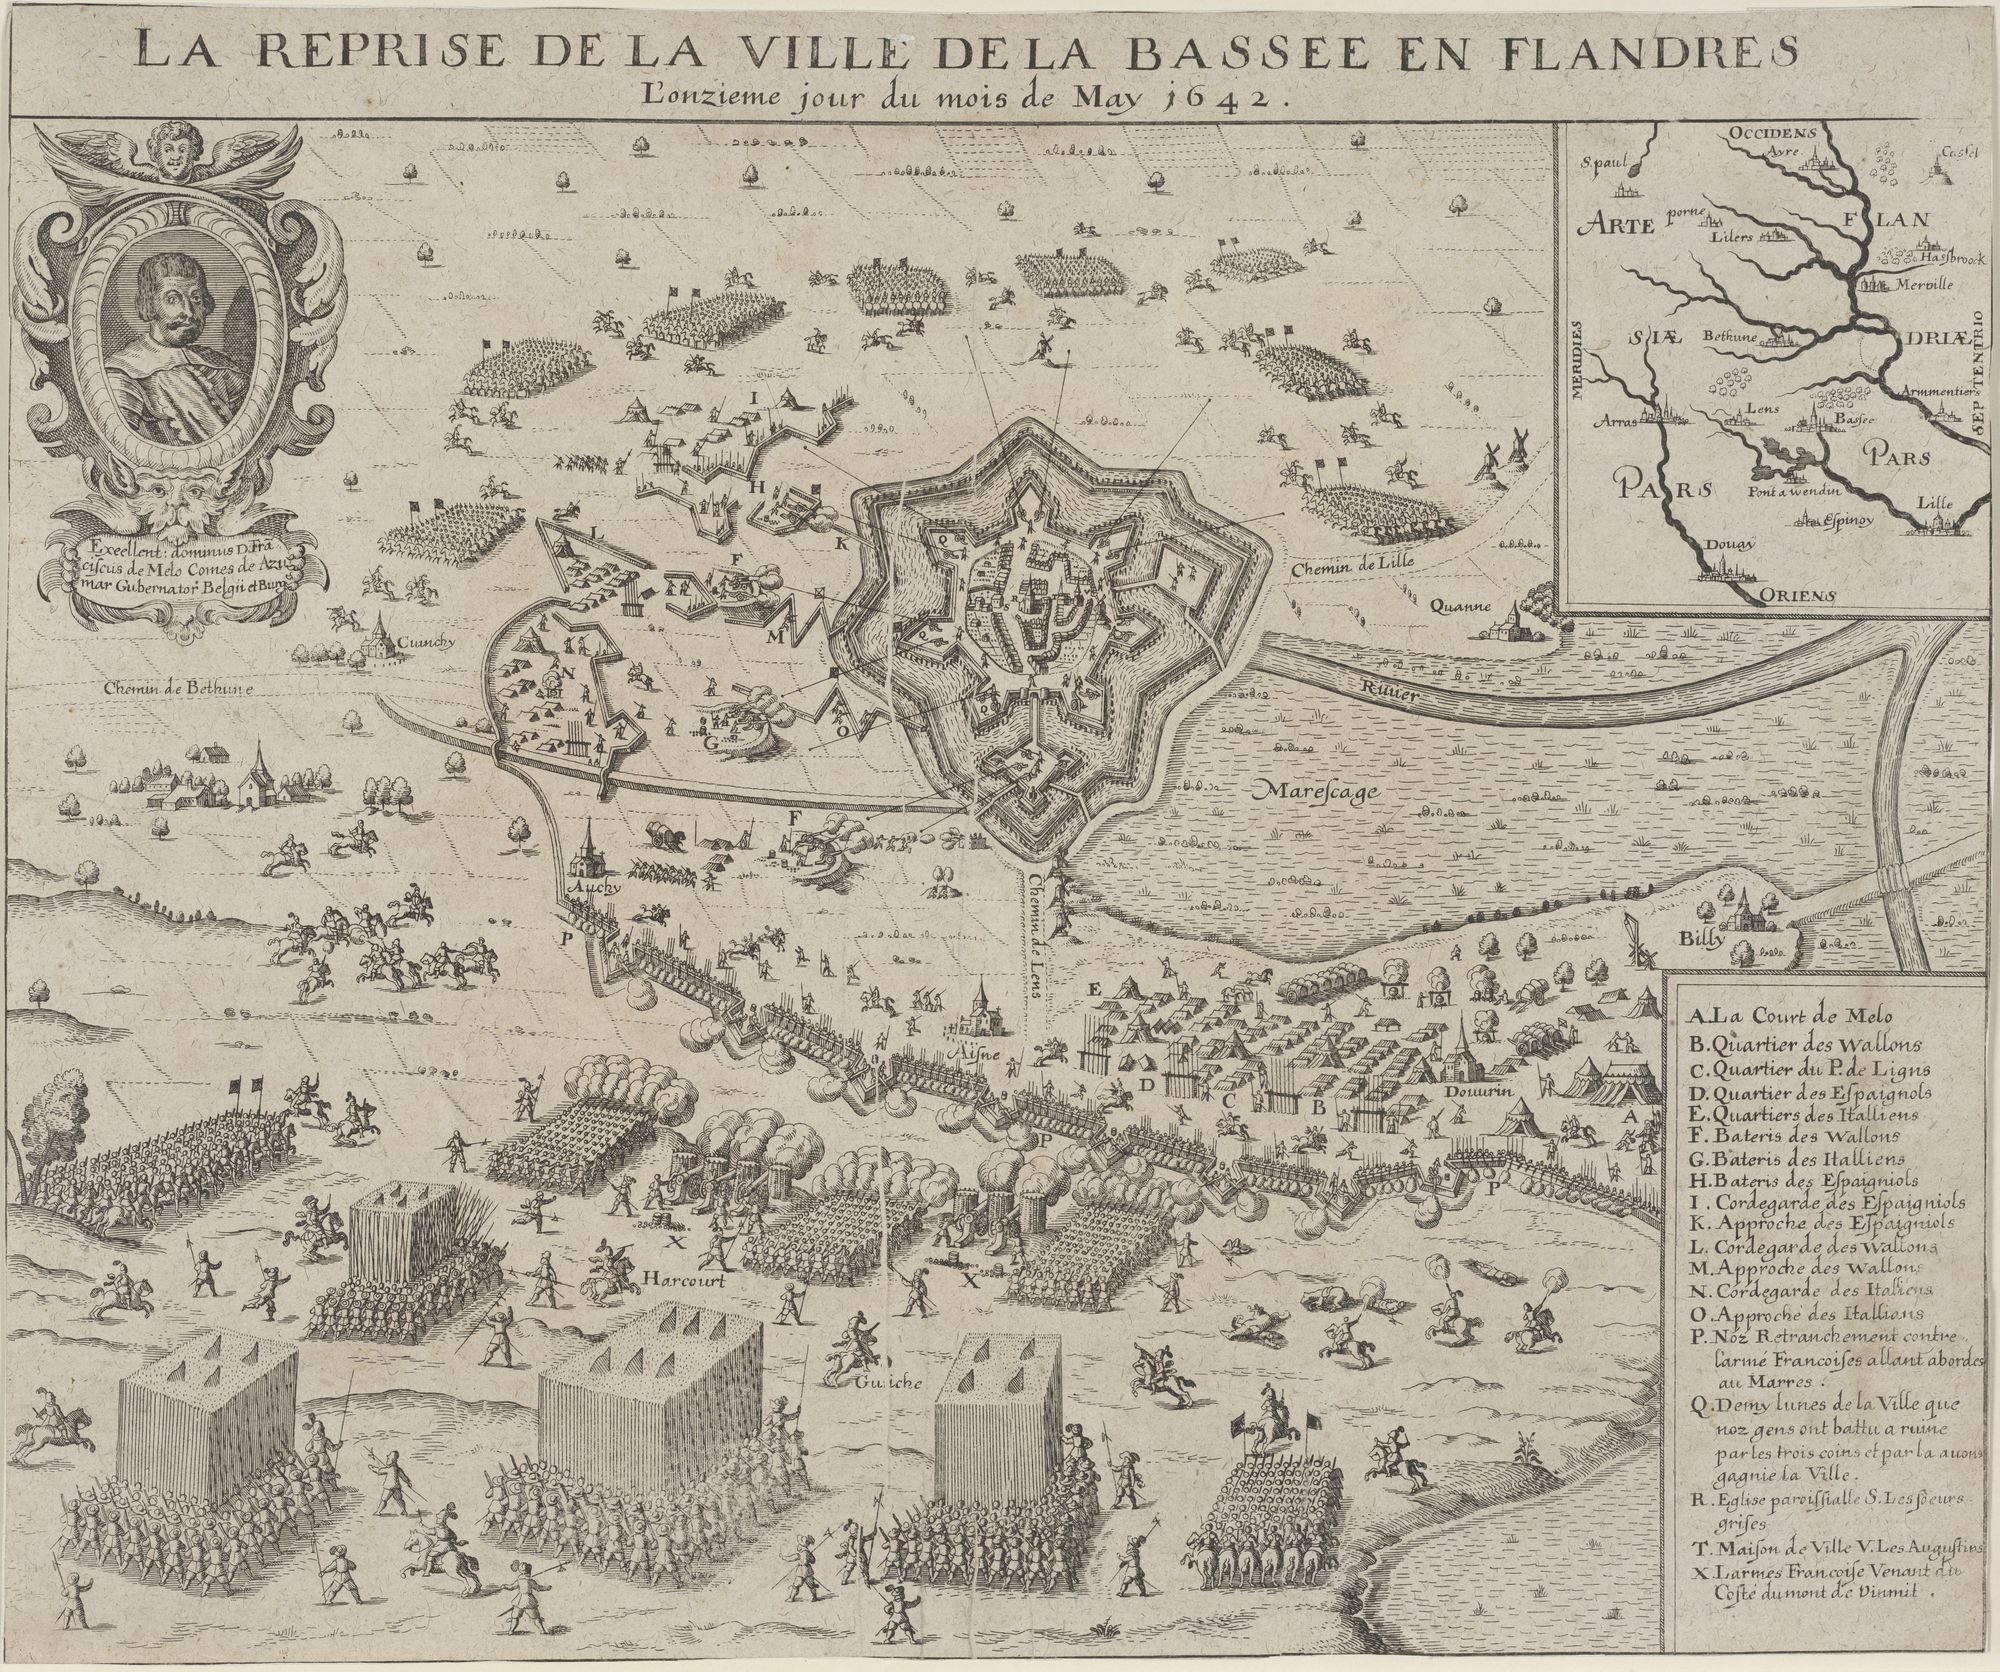 LA REPRISE DE LA VILLE DE LA BASSEE EN FLANDRES/ L'onzieme jour di mois May 1642. (Kulturstiftung Sachsen-Anhalt Public Domain Mark)